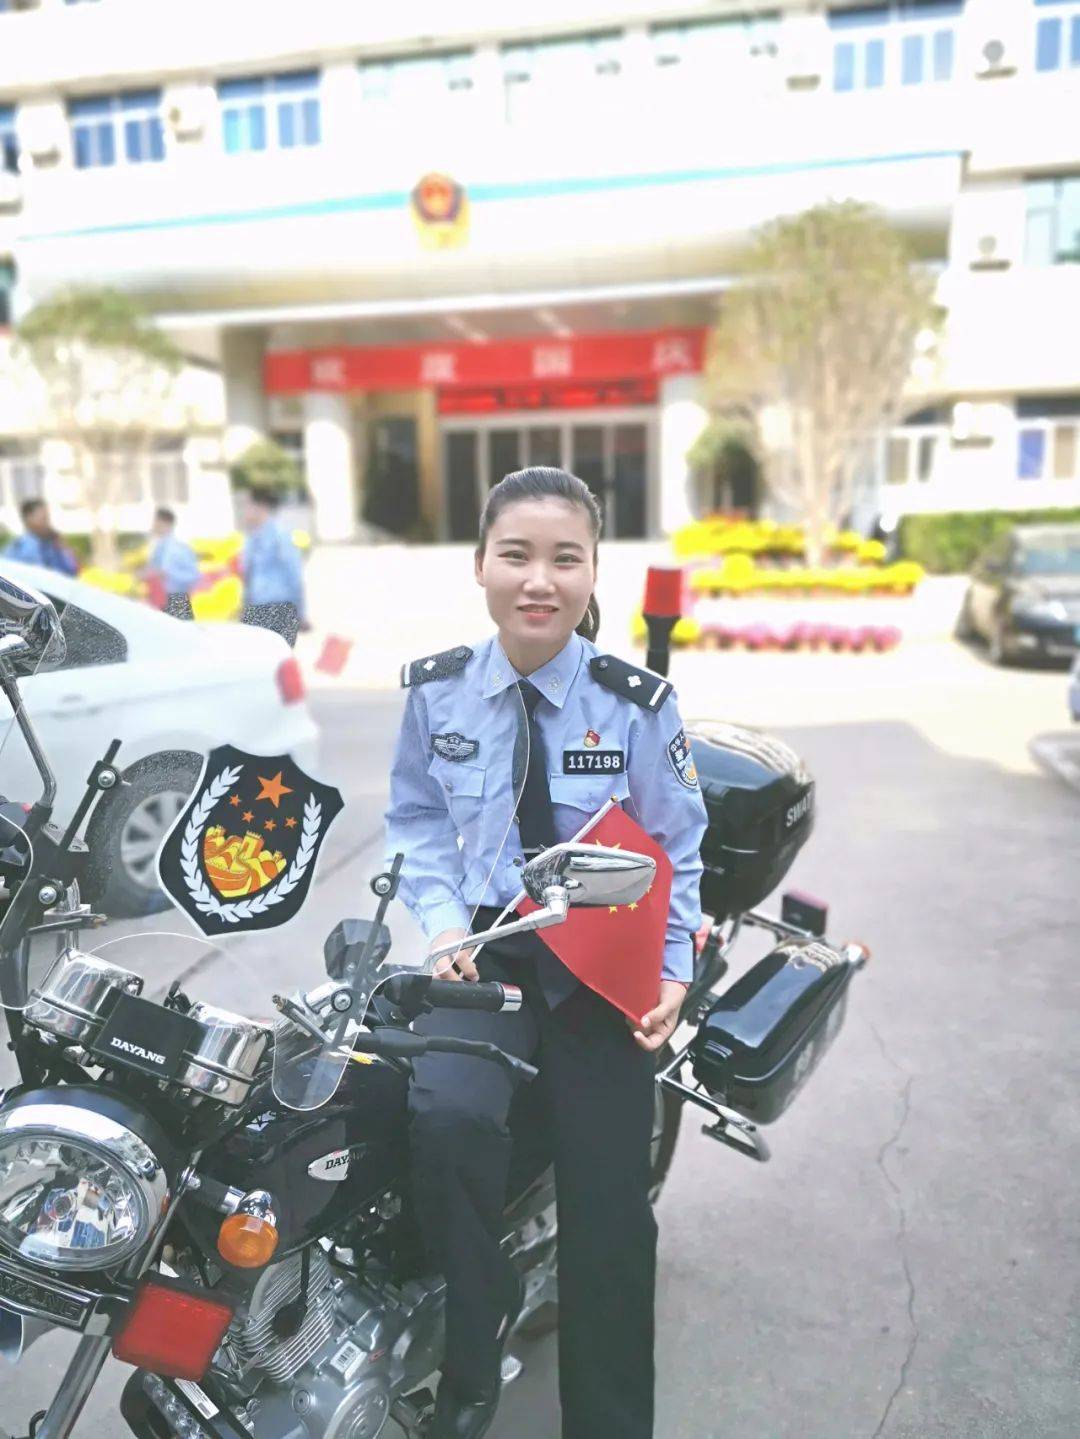 关注110警察节丨看看嵩县这些警察帅气的第一张警服照